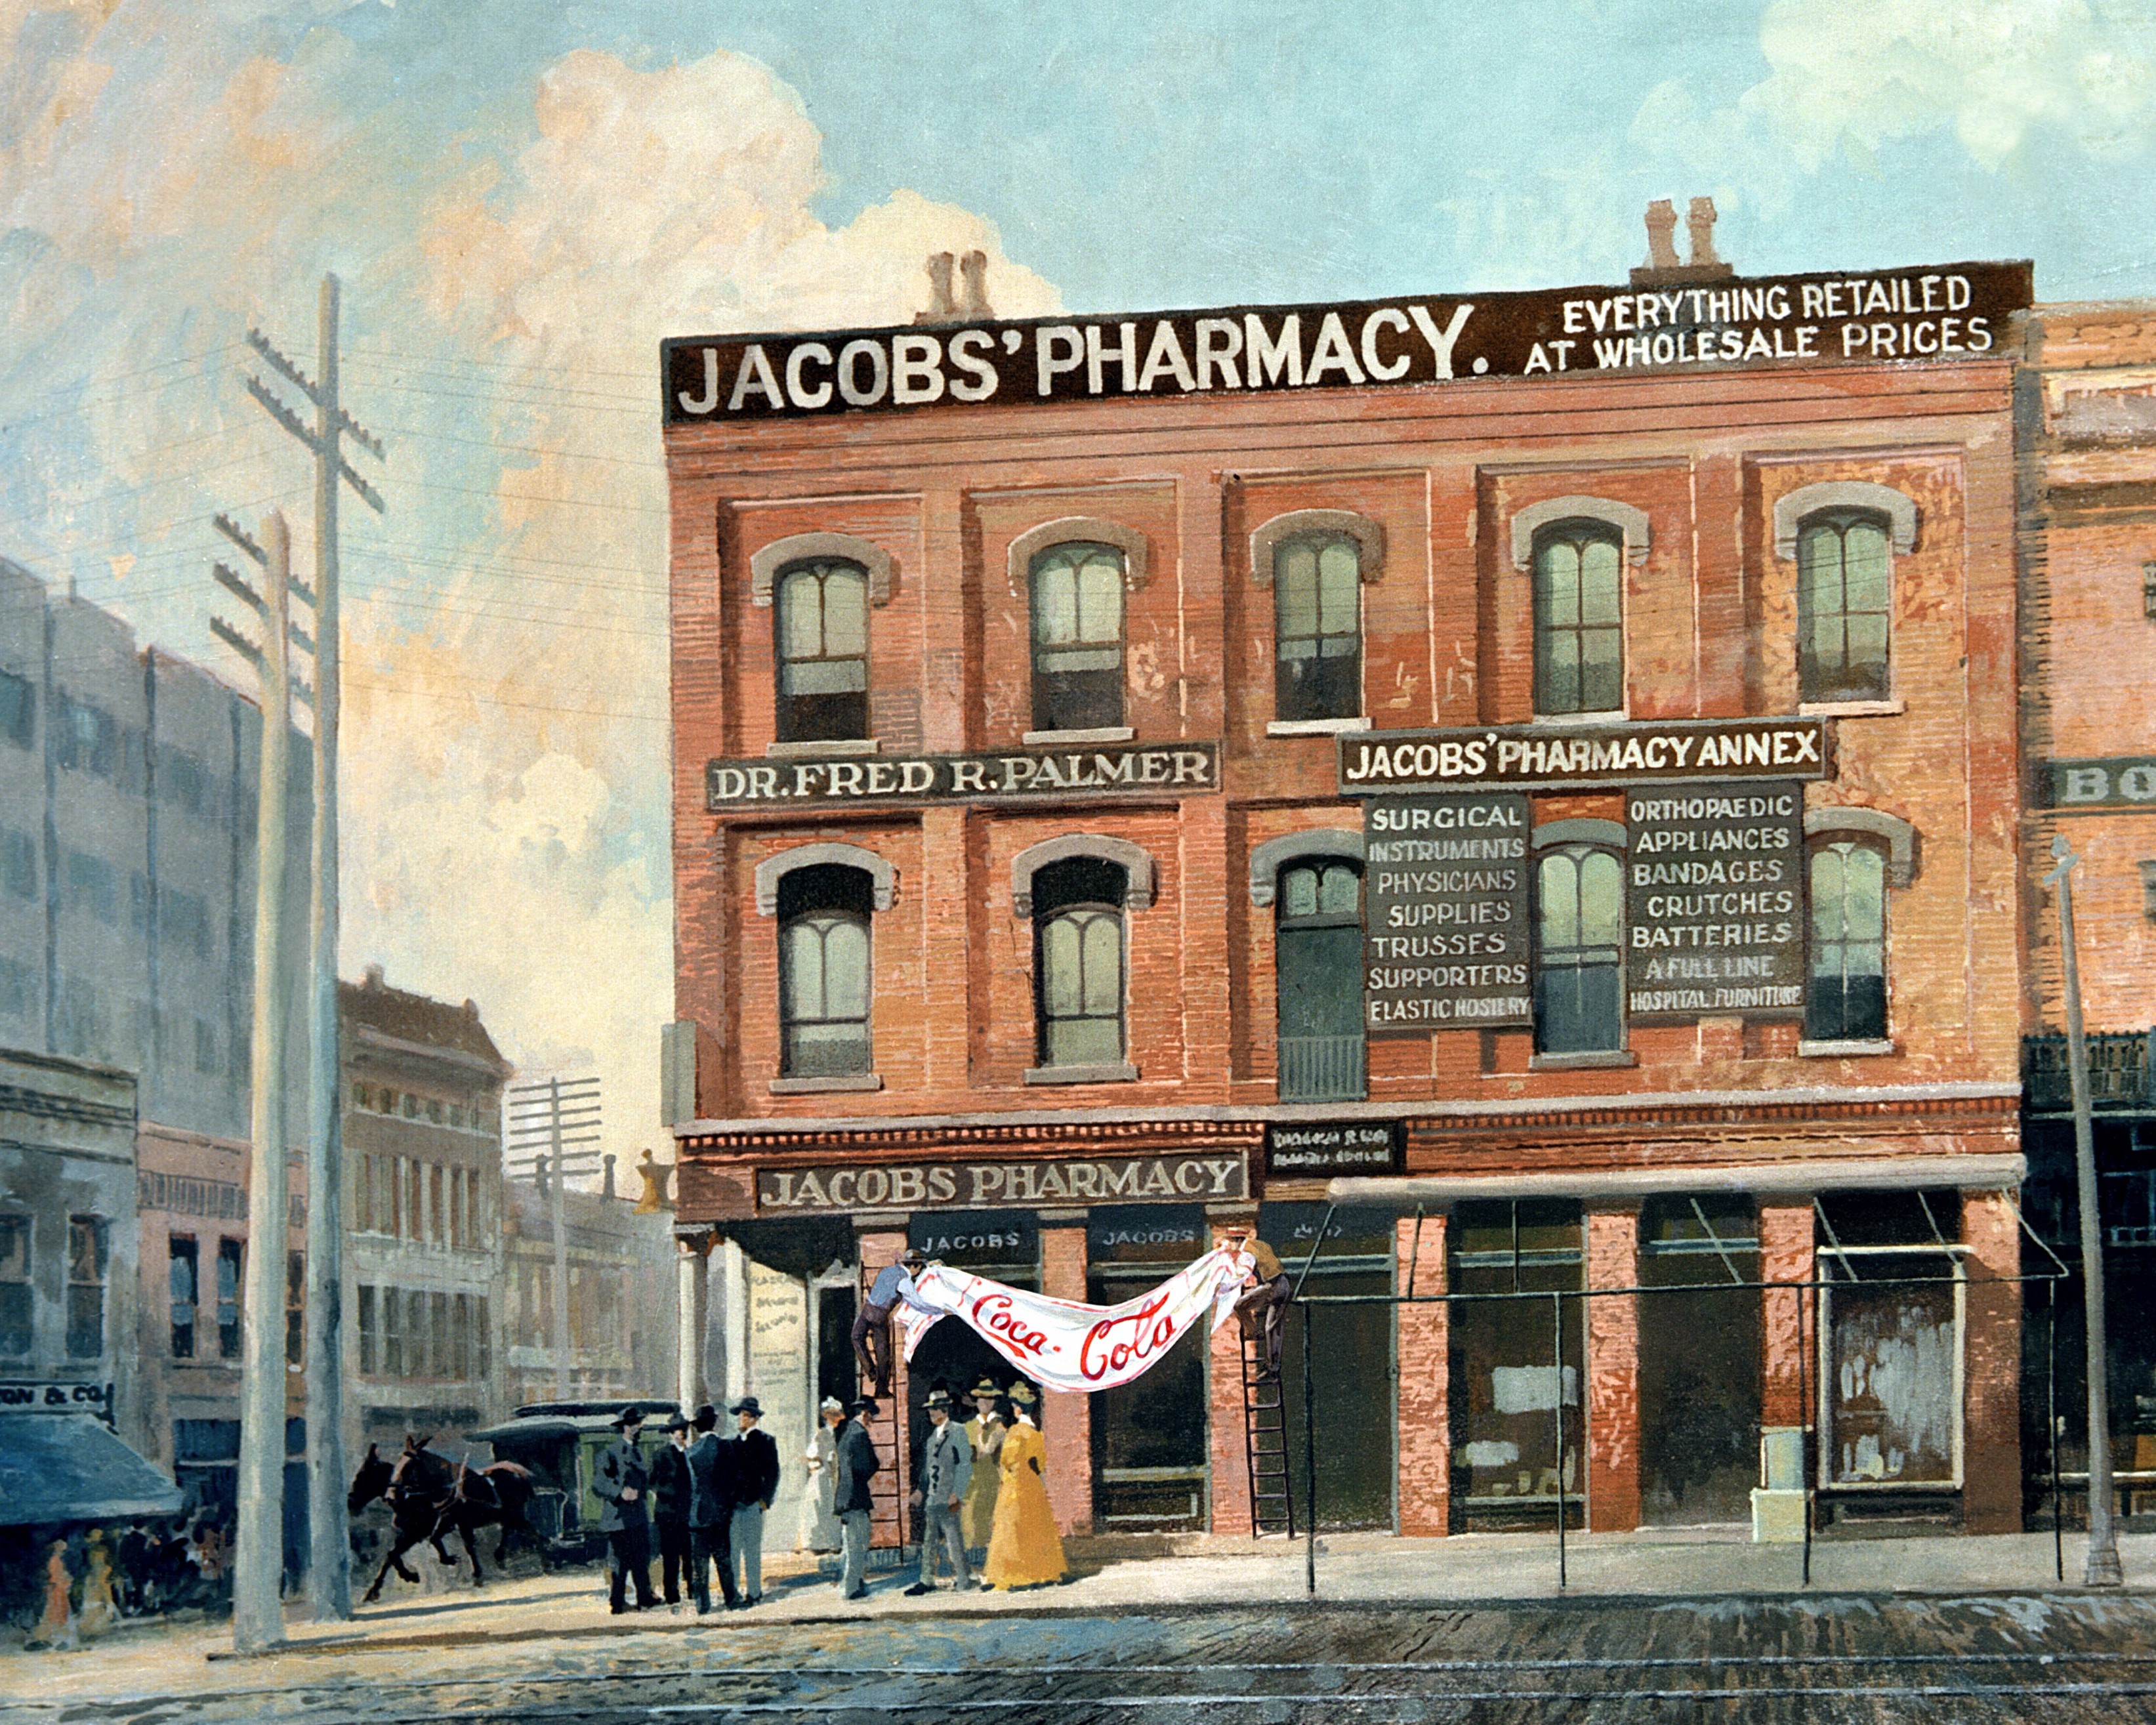 Jacob's pharmacy building